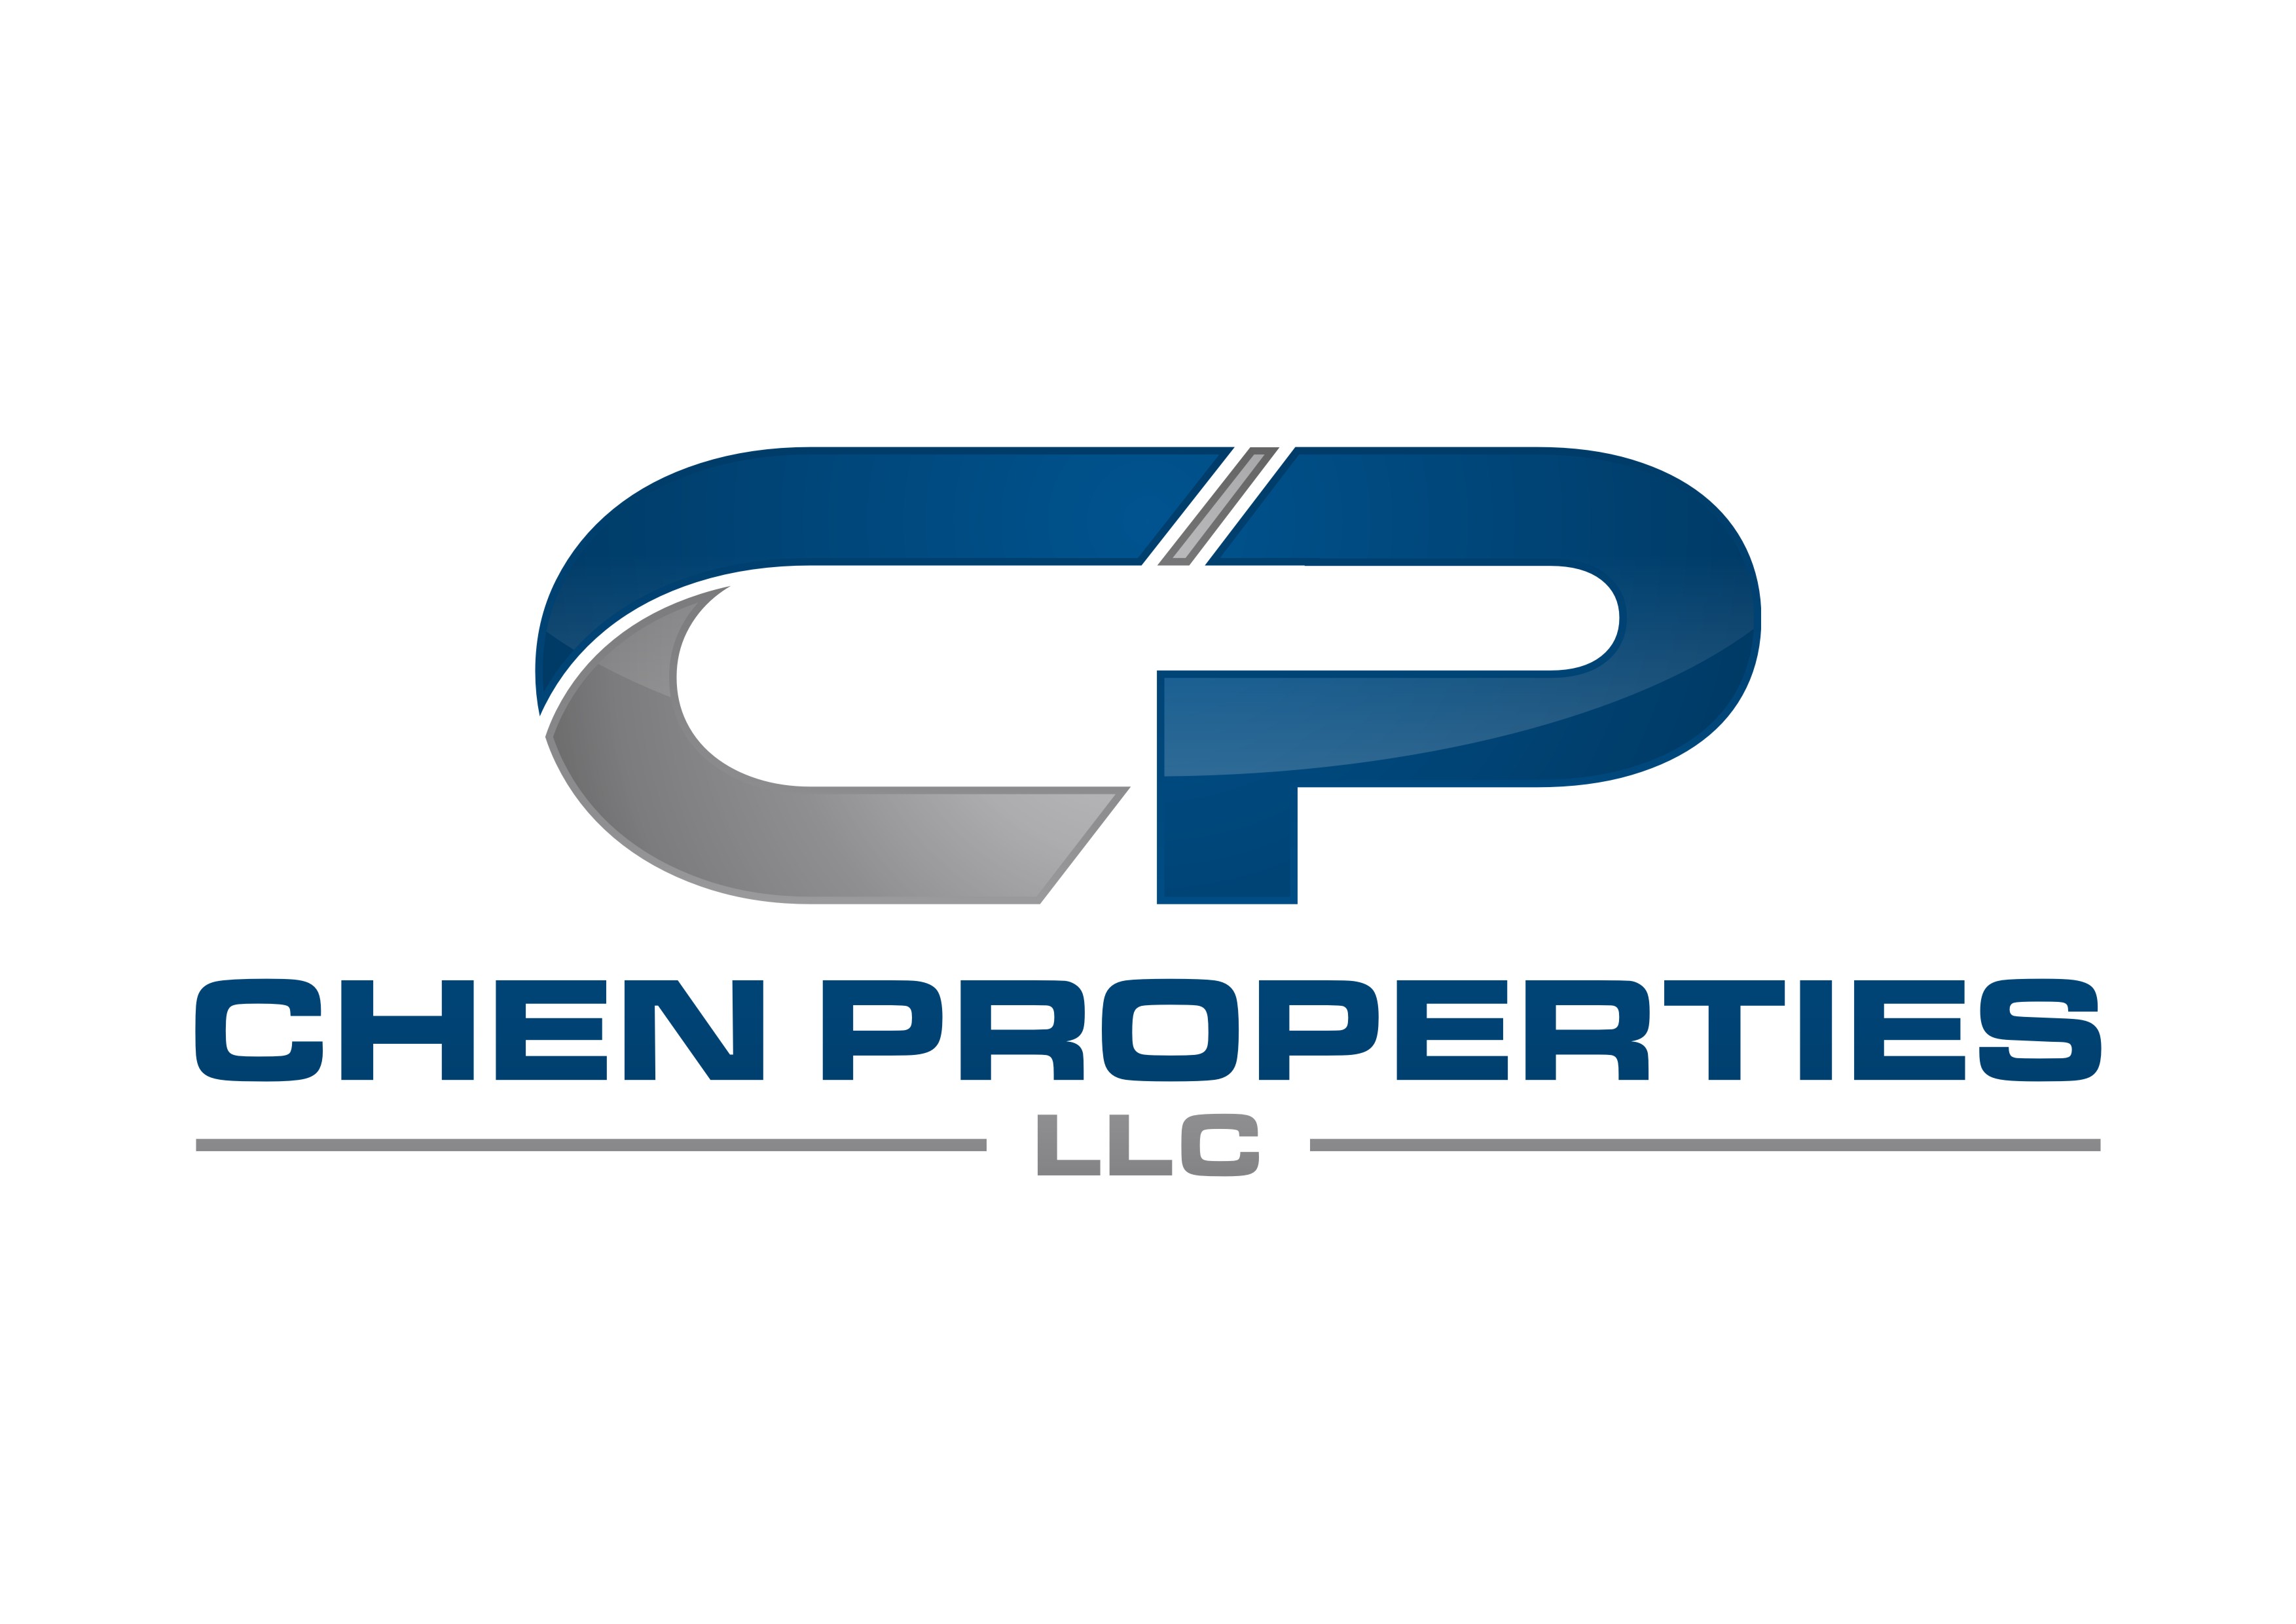 Chen Properties